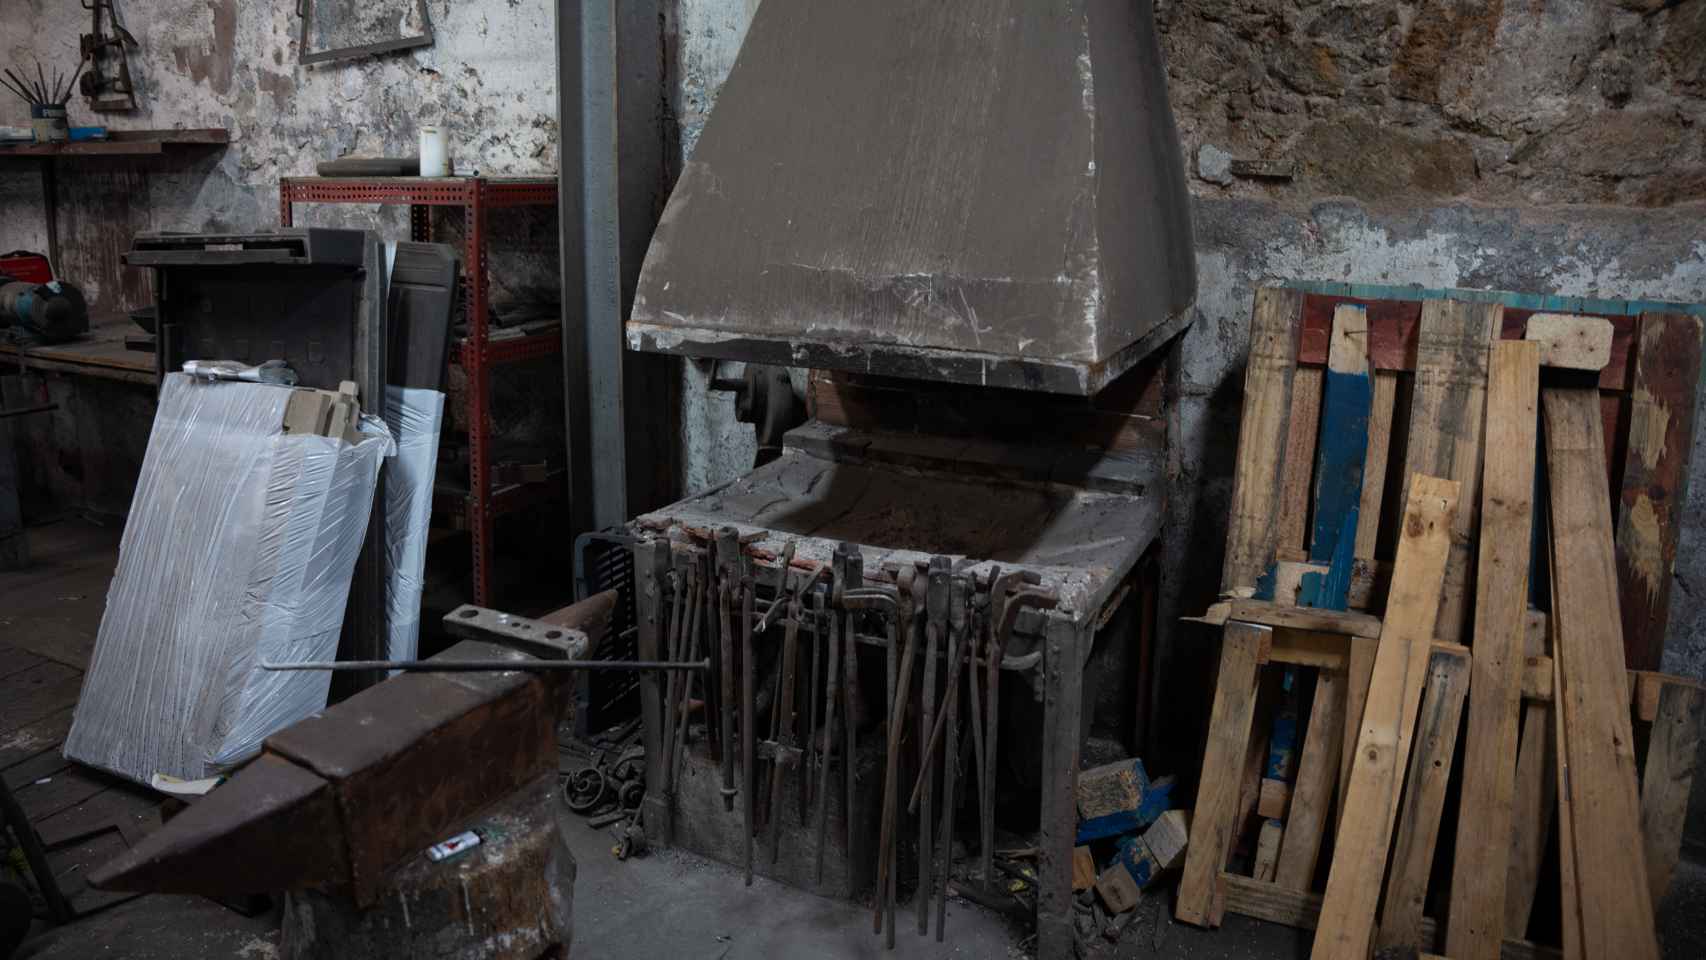 Imagen de la fragua, el fogón que se usa principalmente para forjar metales